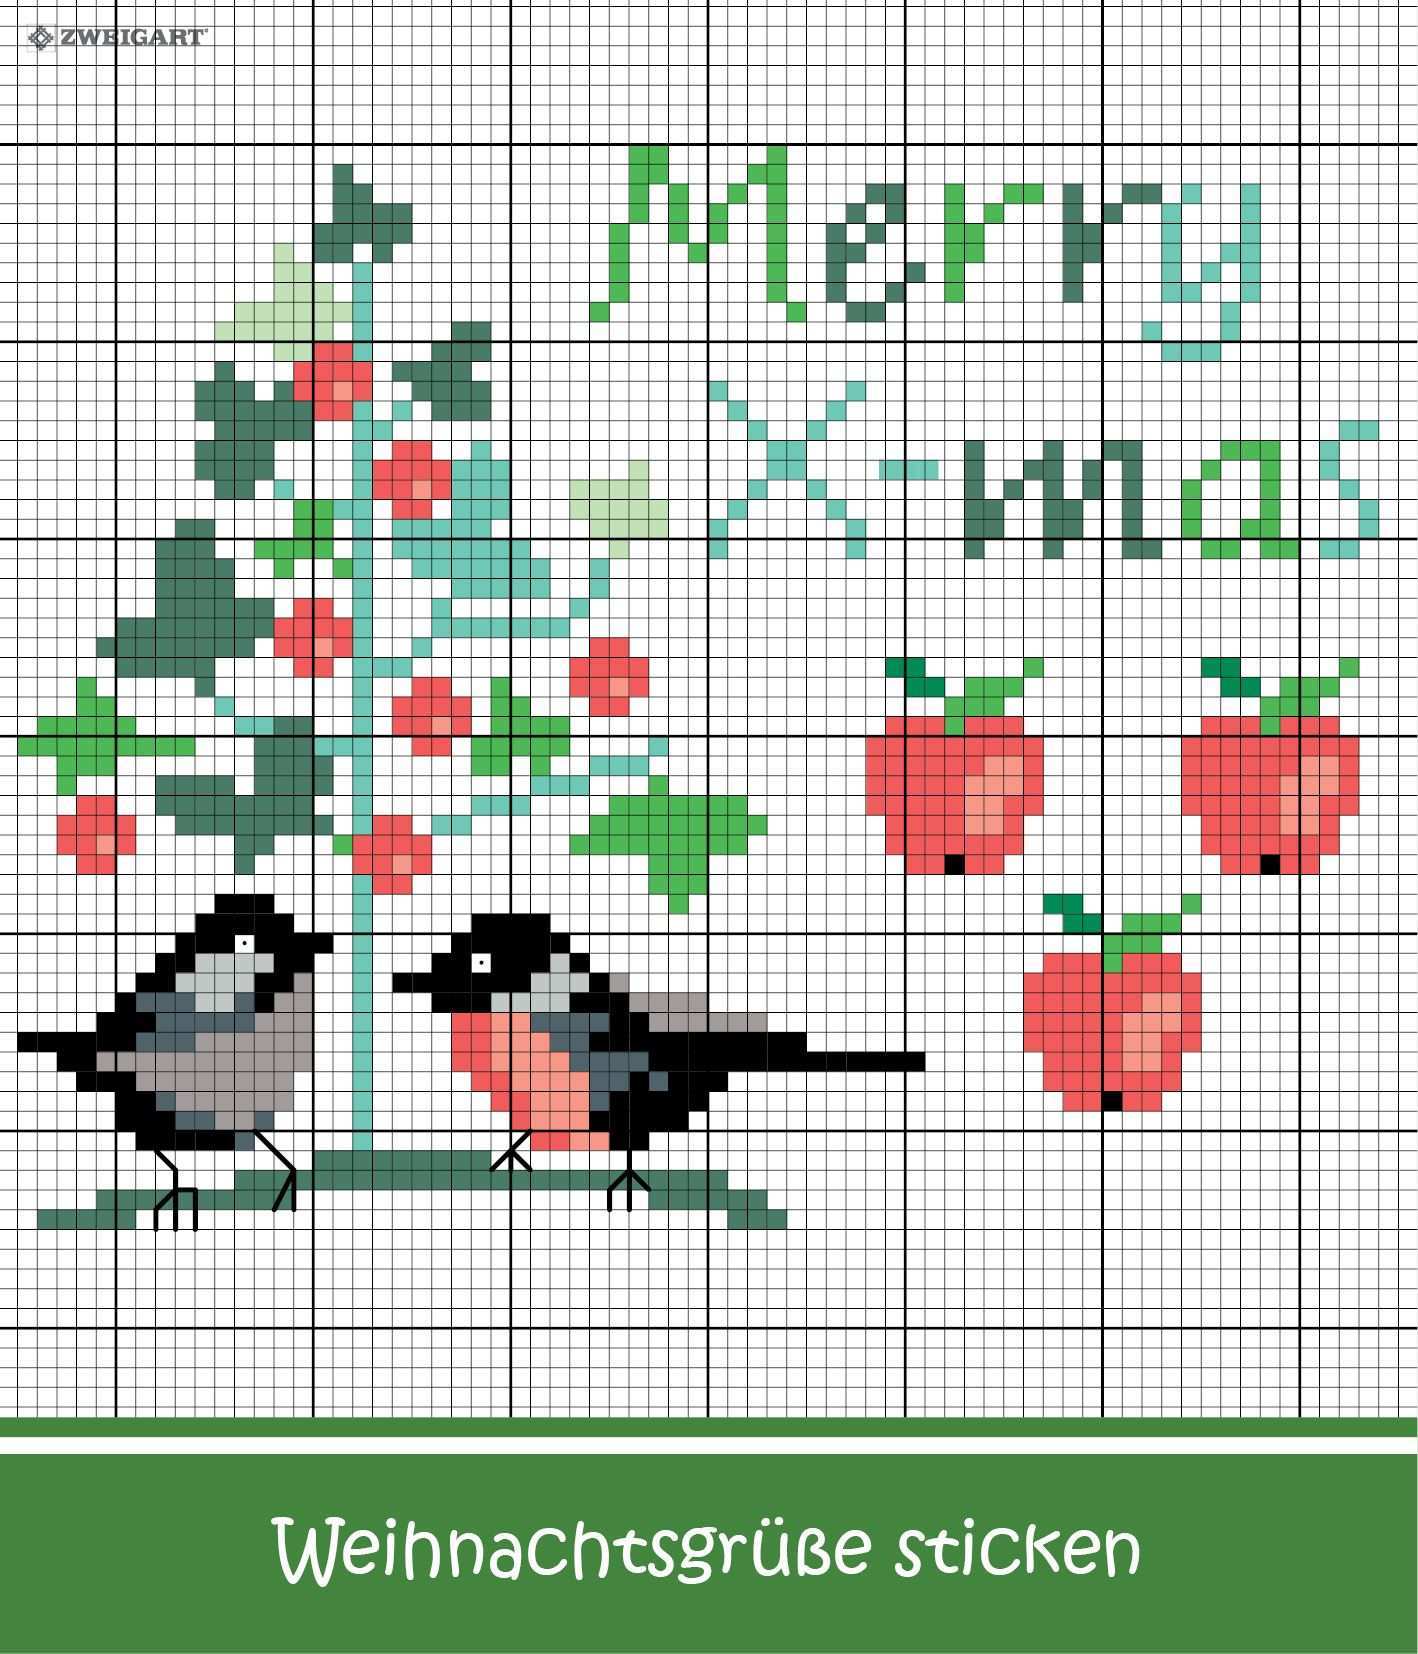 Weihnachtsgrusse Mit Vogelchen Apfeln Sticken Sticken Kreuzstich Weihnachten Merry Christmas Embroidery Weihnachten Kreuzstich Kreuzstich Sticken